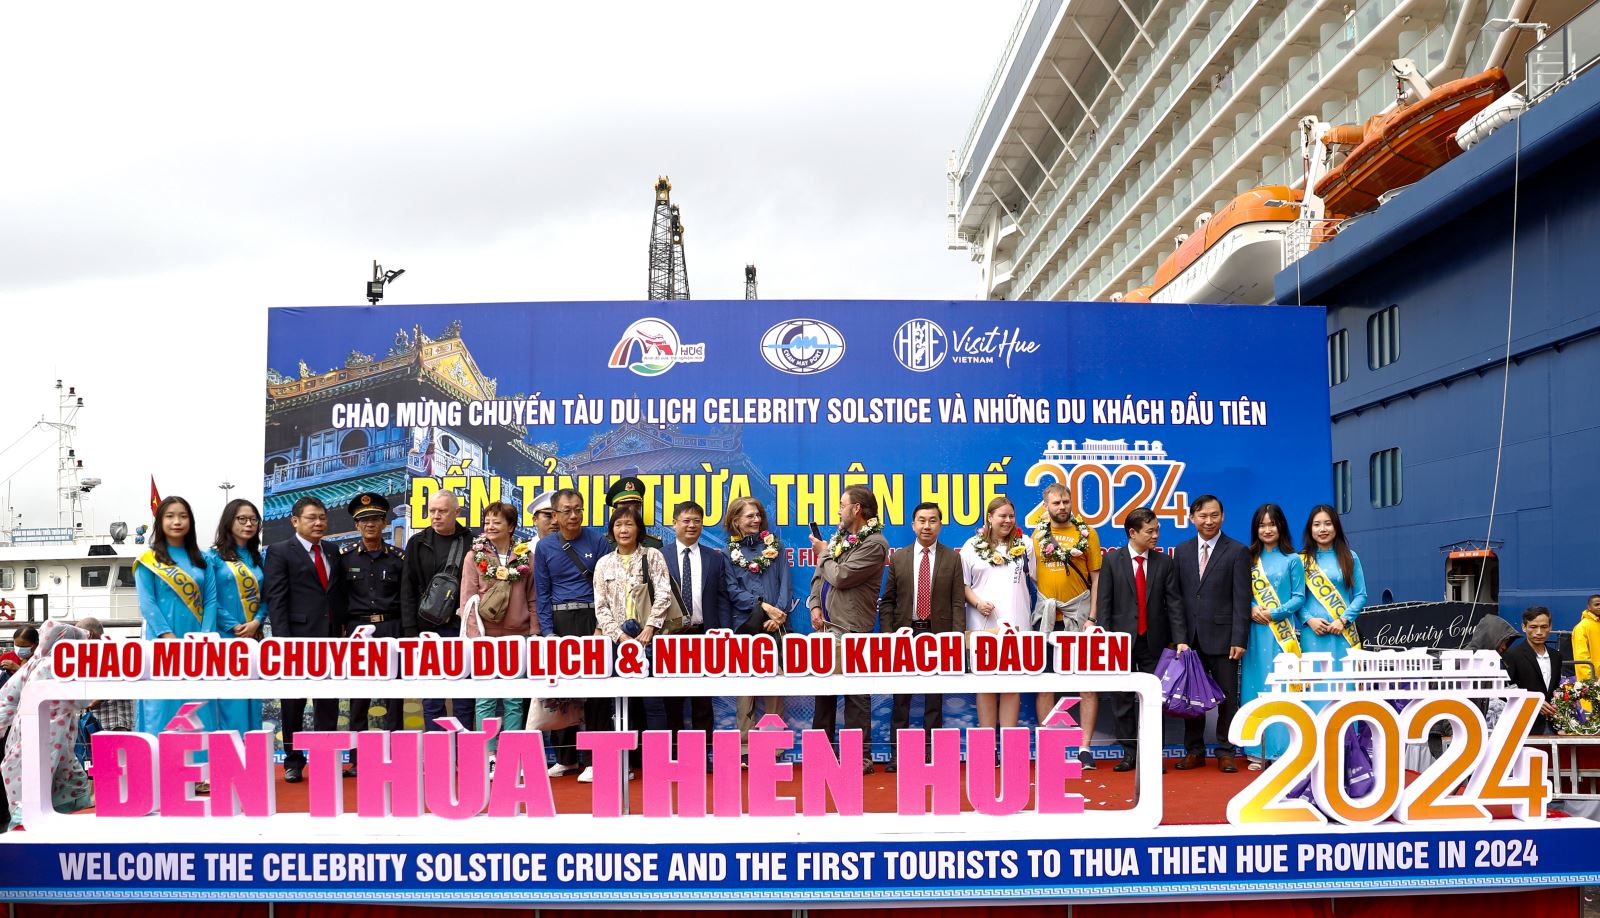 Tỉnh Thừa Thiên Huế tổ chức chương trình đón chuyến tàu du lịch và những du khách đầu tiên bằng đường hàng hải năm 2024.